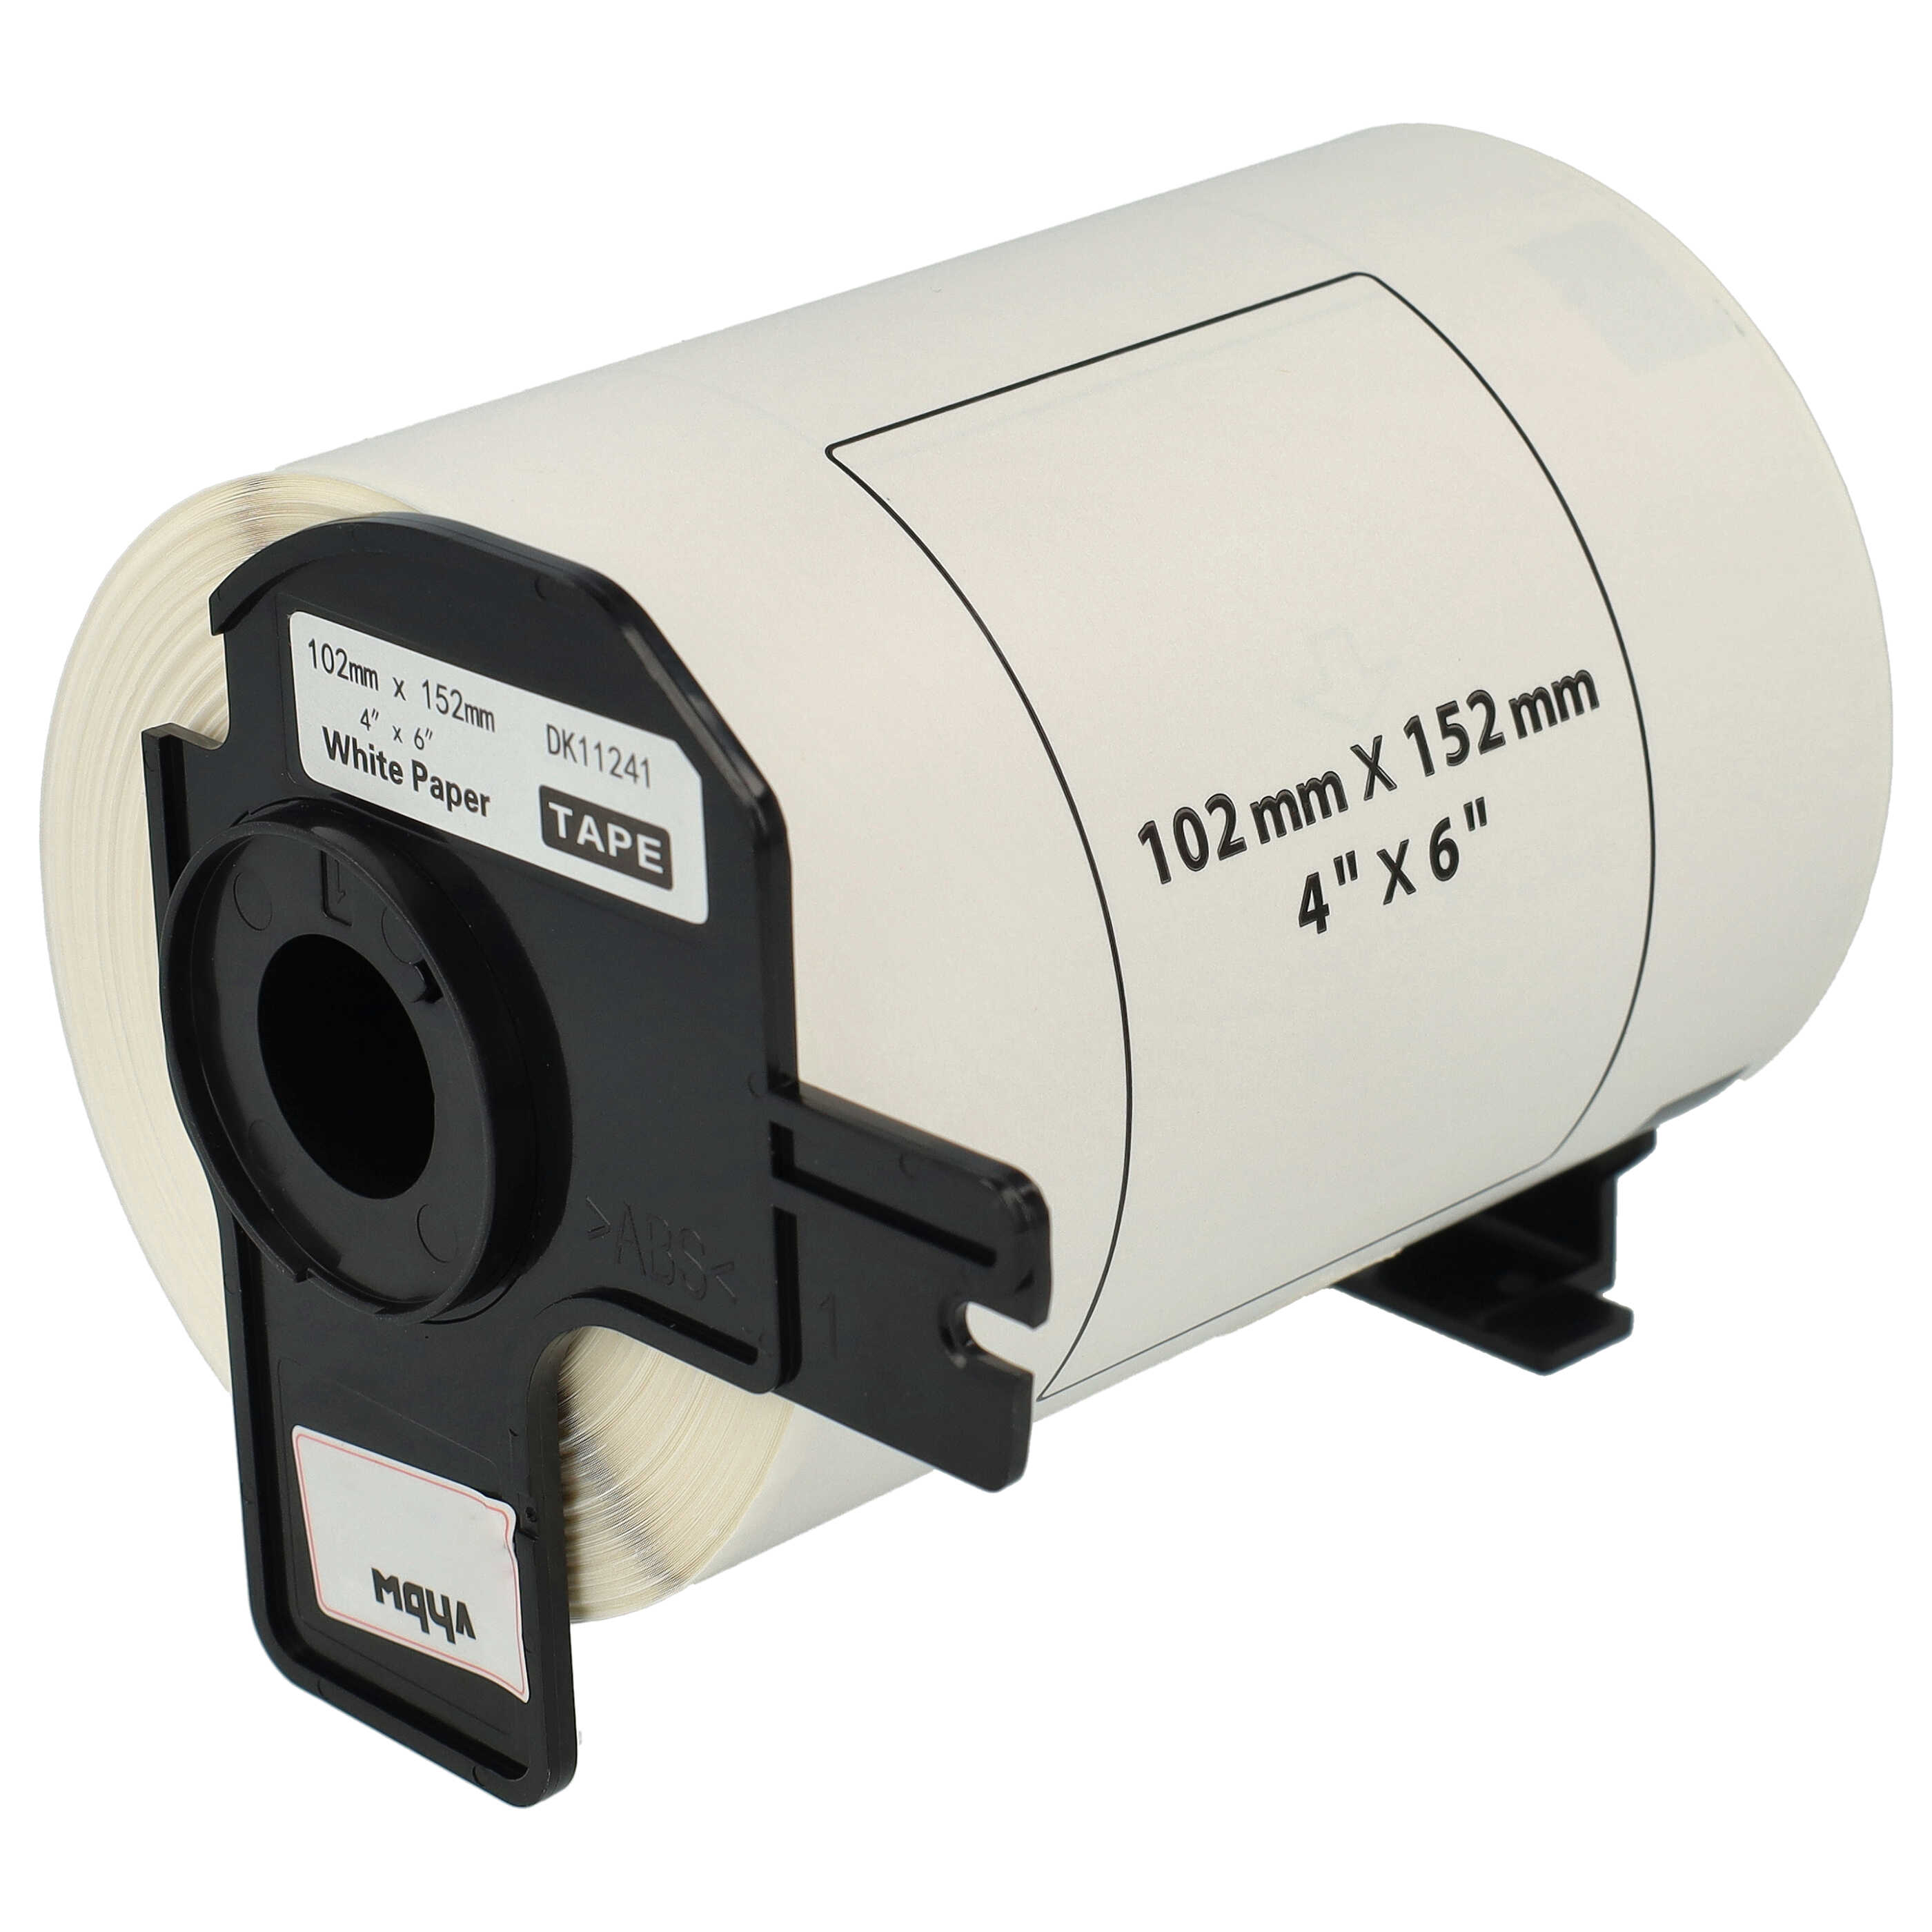 Etiketten als Ersatz für Brother DK-11241 Etikettendrucker - Standard 102mm x 152mm + Halter